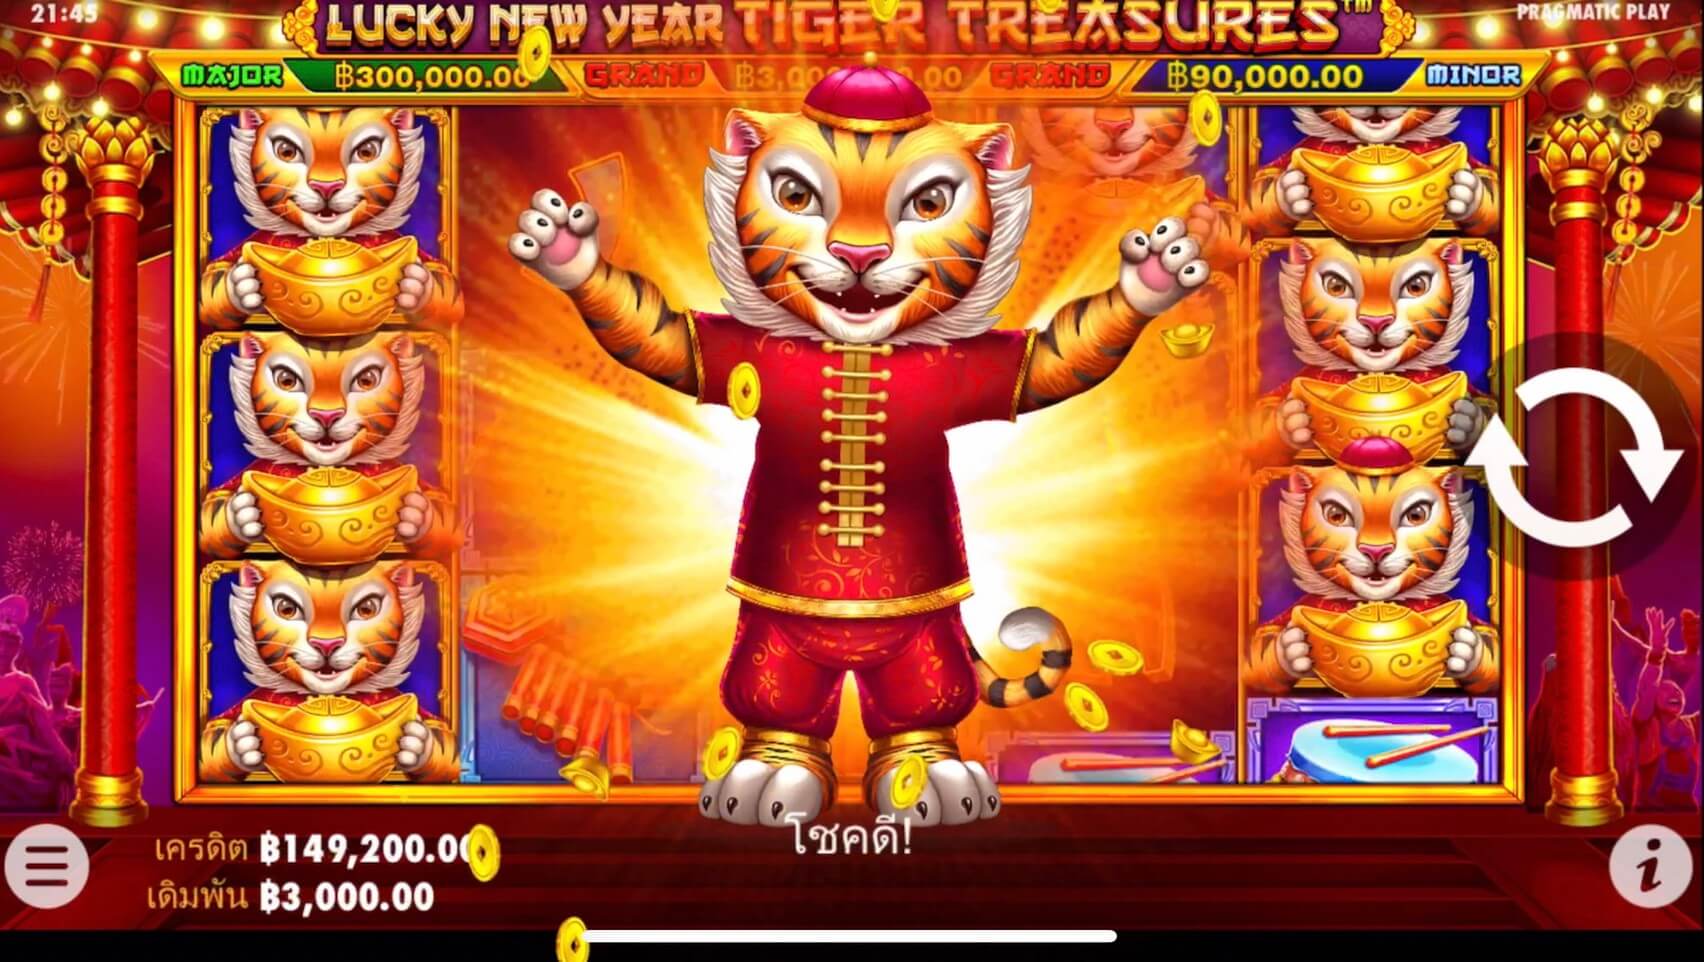 รีวิวเกมสล็อต PP : Lucky New Year Tiger Treasures โชคดีปีเสือ